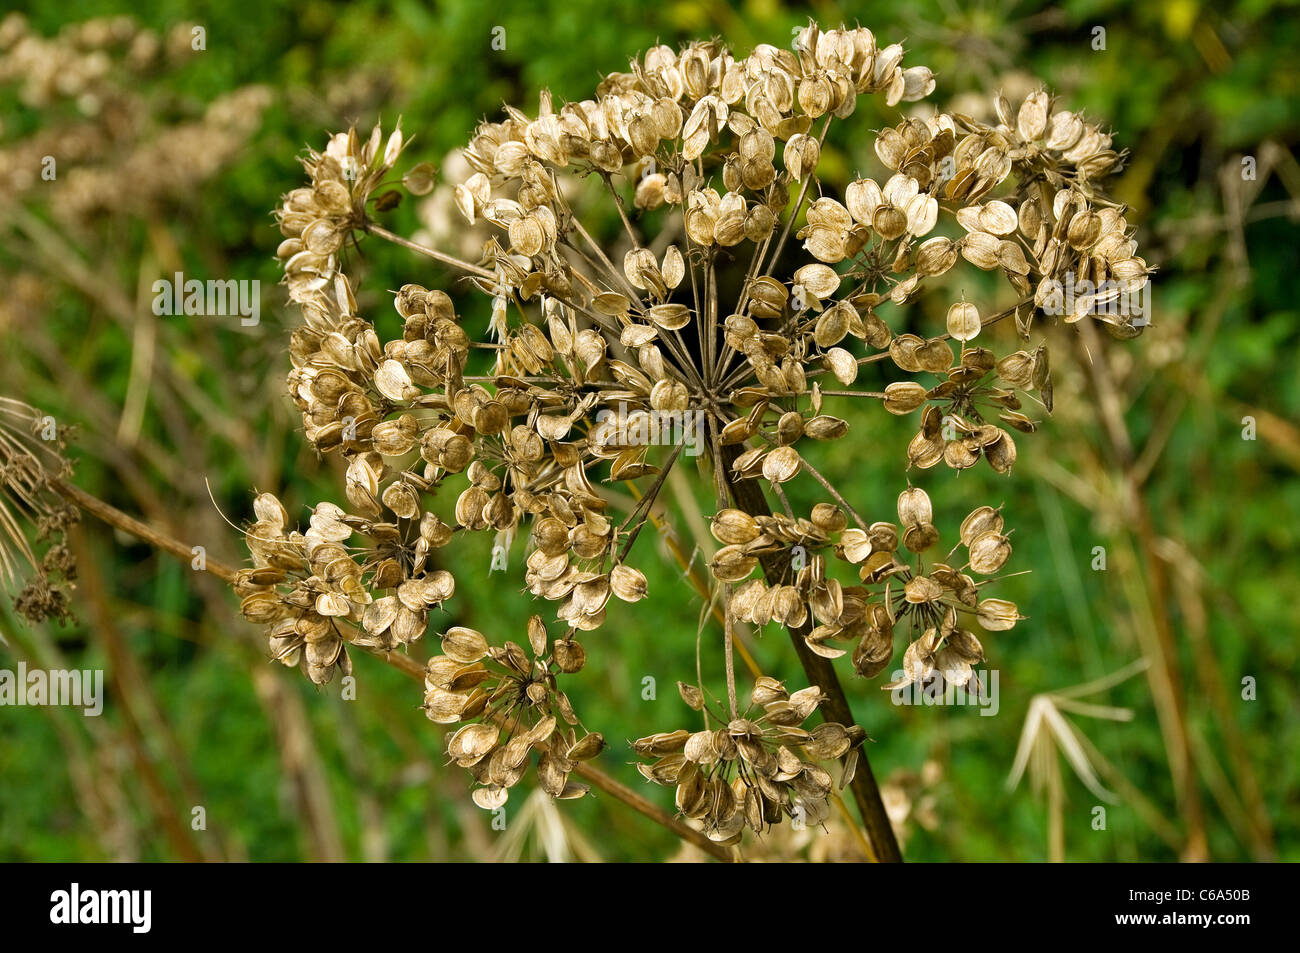 Persil de vache gros plan graines têtes tête de semis (anthriscus sylvestris) En été Angleterre Royaume-Uni Royaume-Uni Grande-Bretagne Banque D'Images